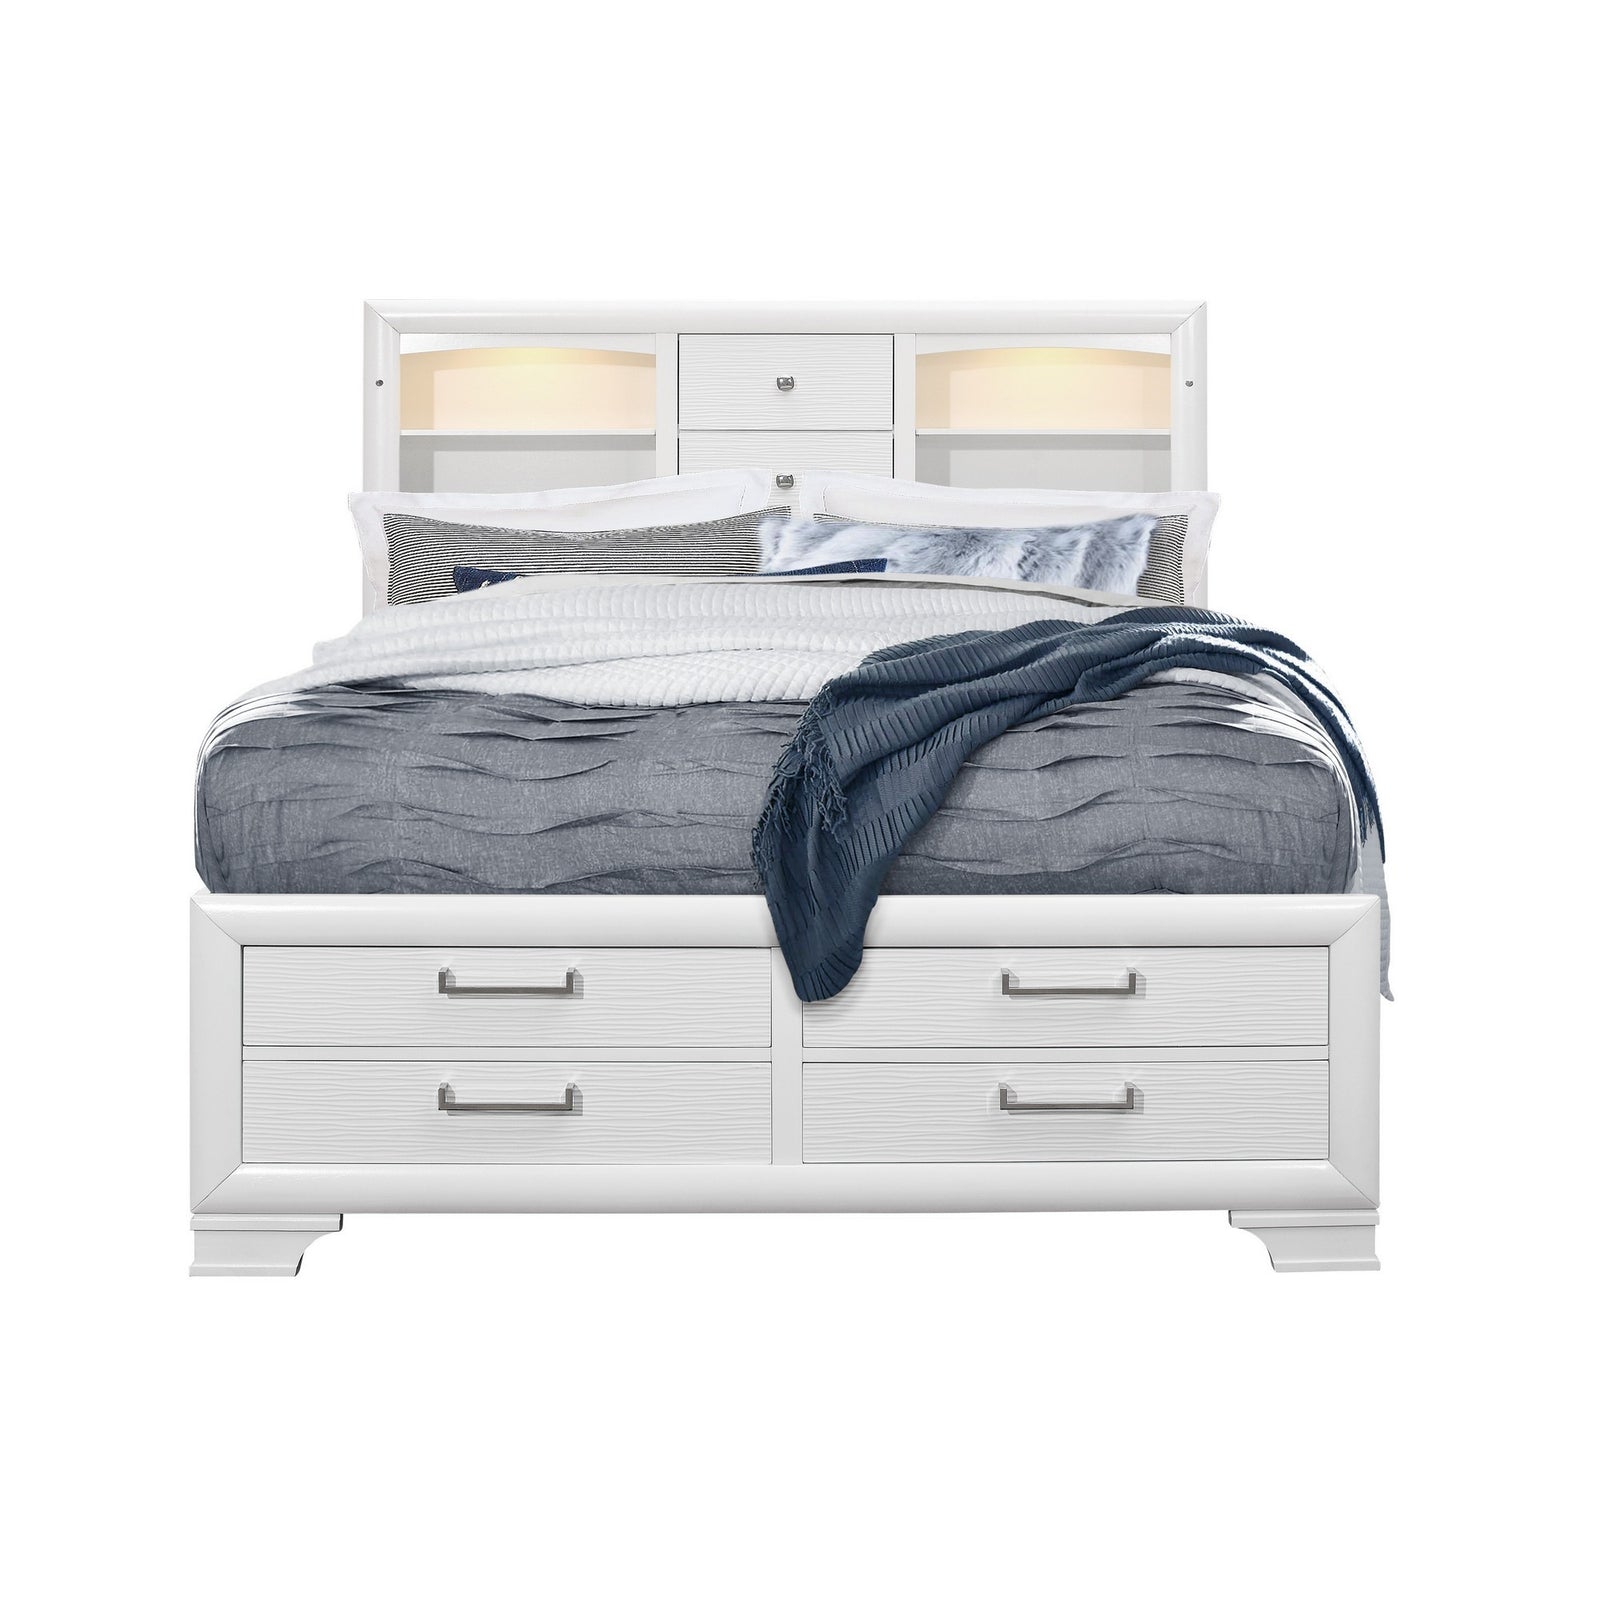 White Rubberwood Full Bed With Bookshelves Headboard  Led Lightning  6 Drawers